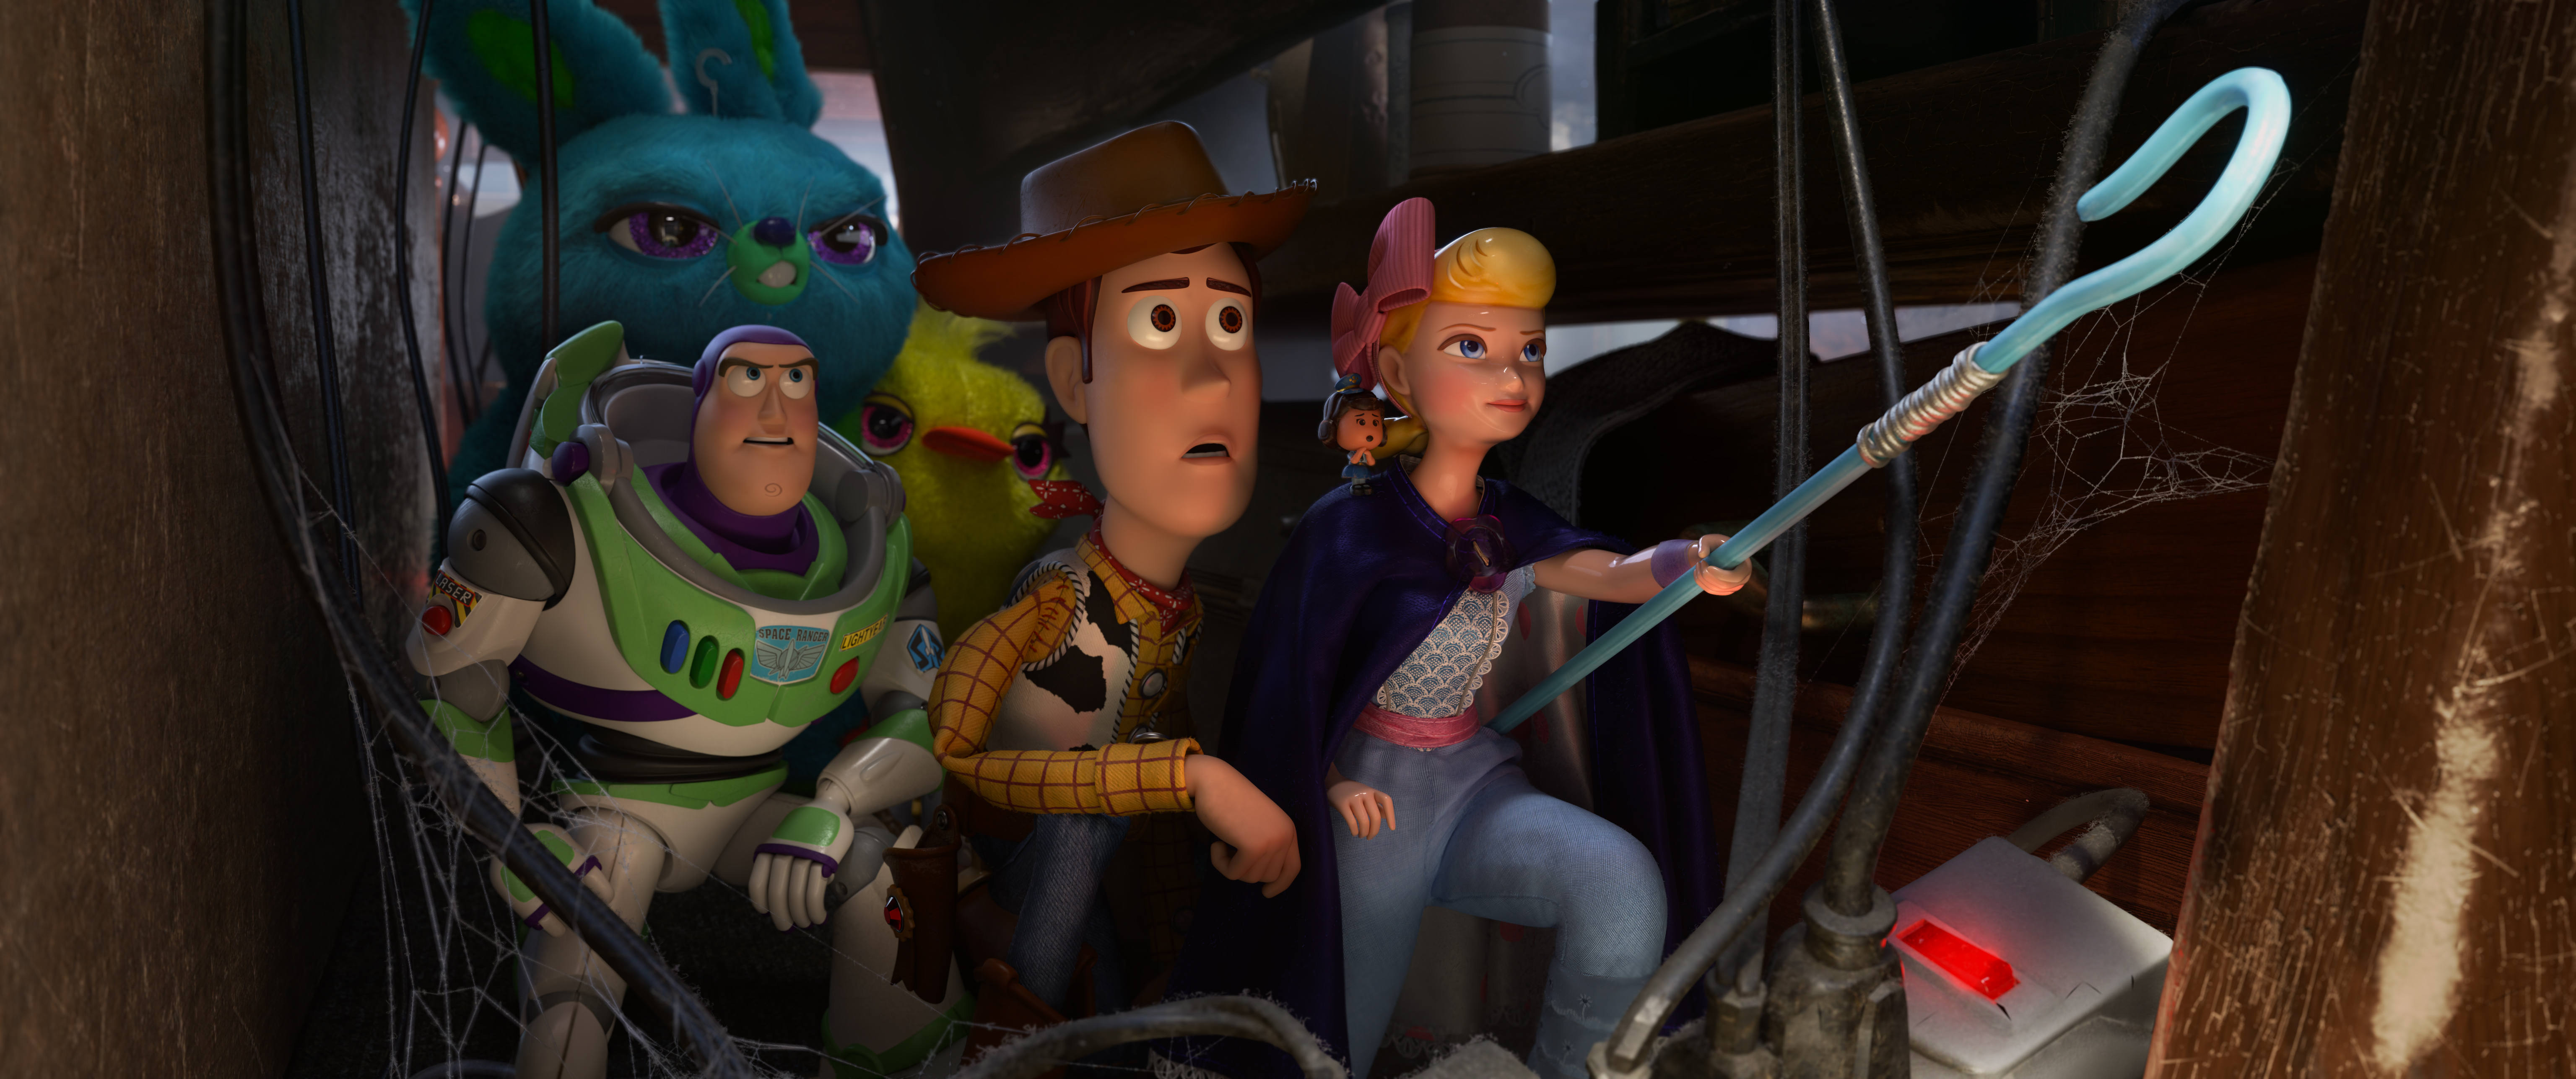 São Paulo para crianças - Andy adulto? Em Toy Story 5 a Pixar pode